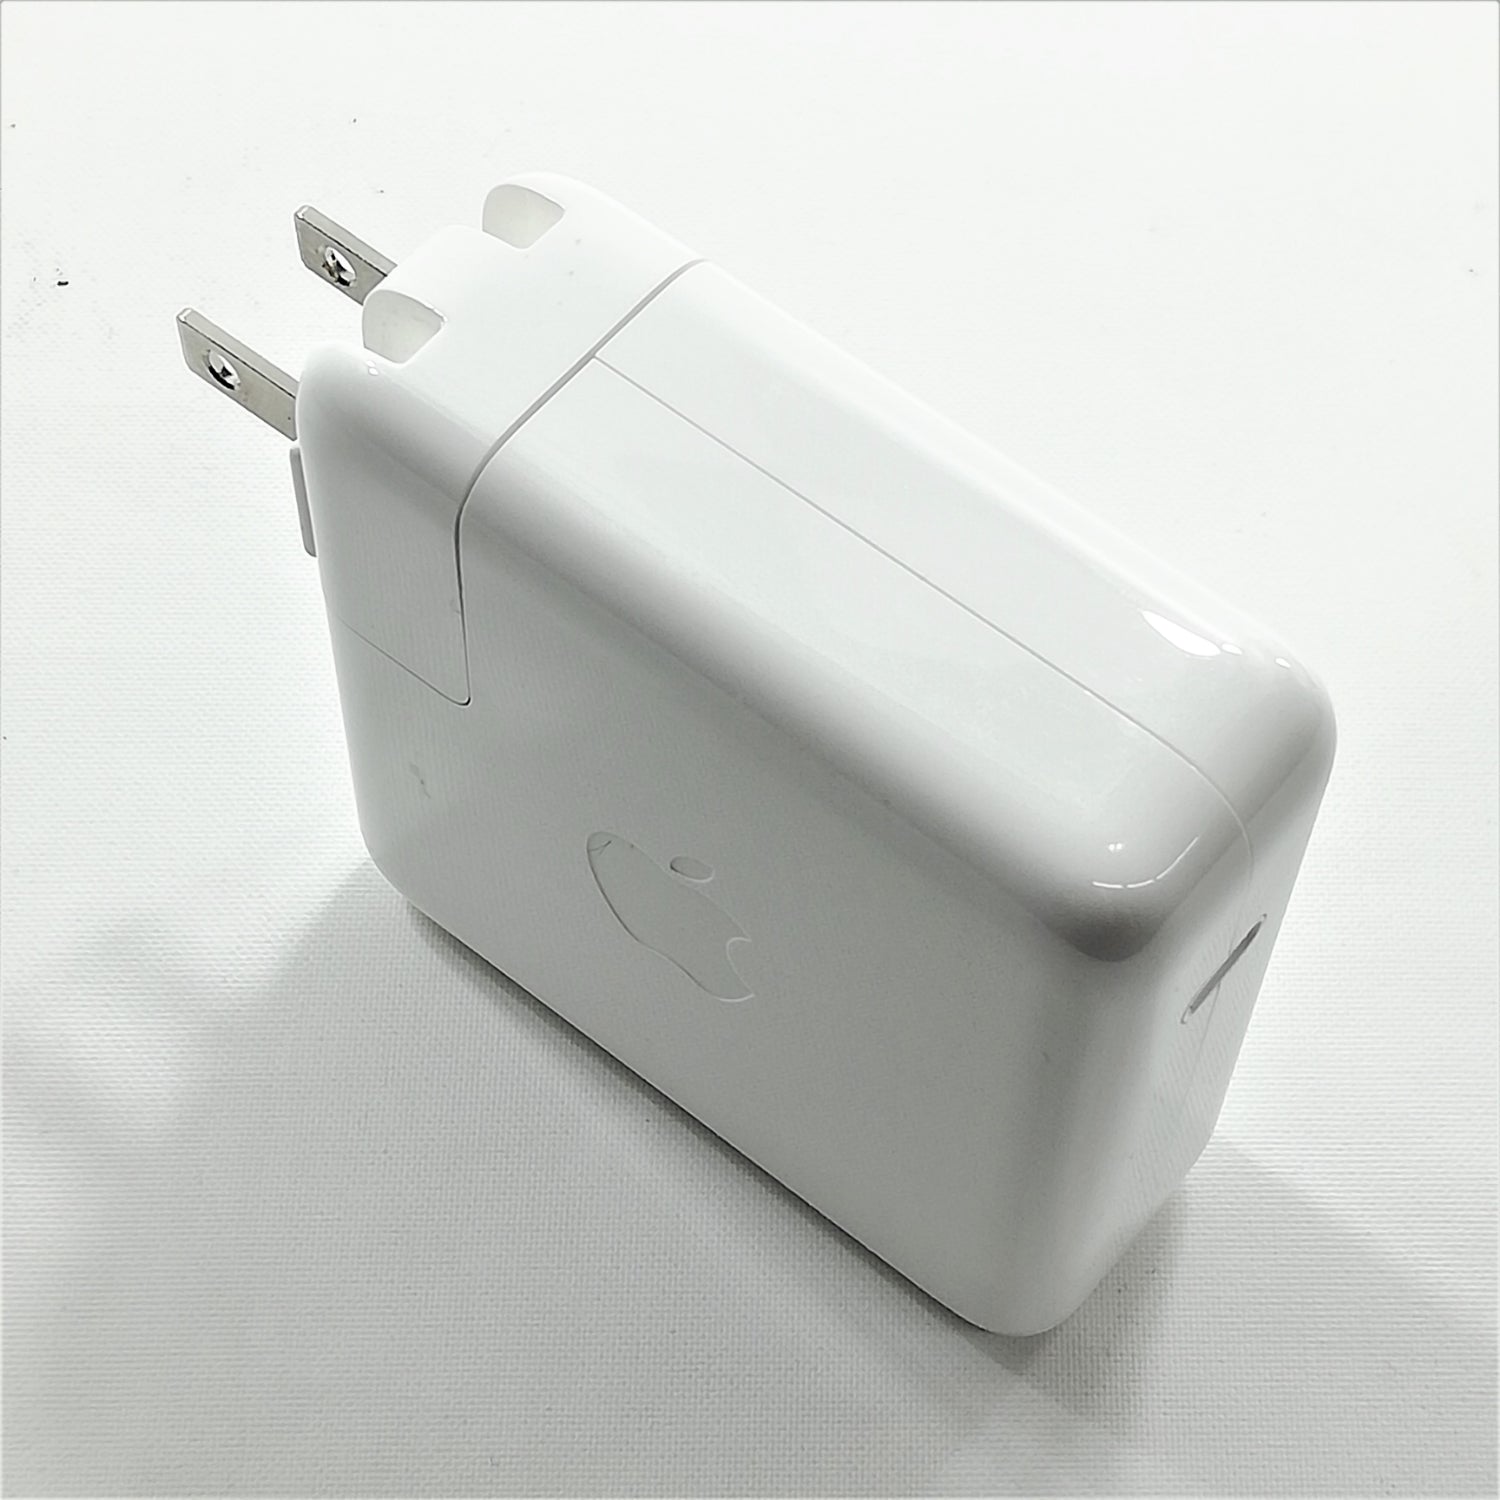 Apple 61W c power 電源アダプタ - タブレット